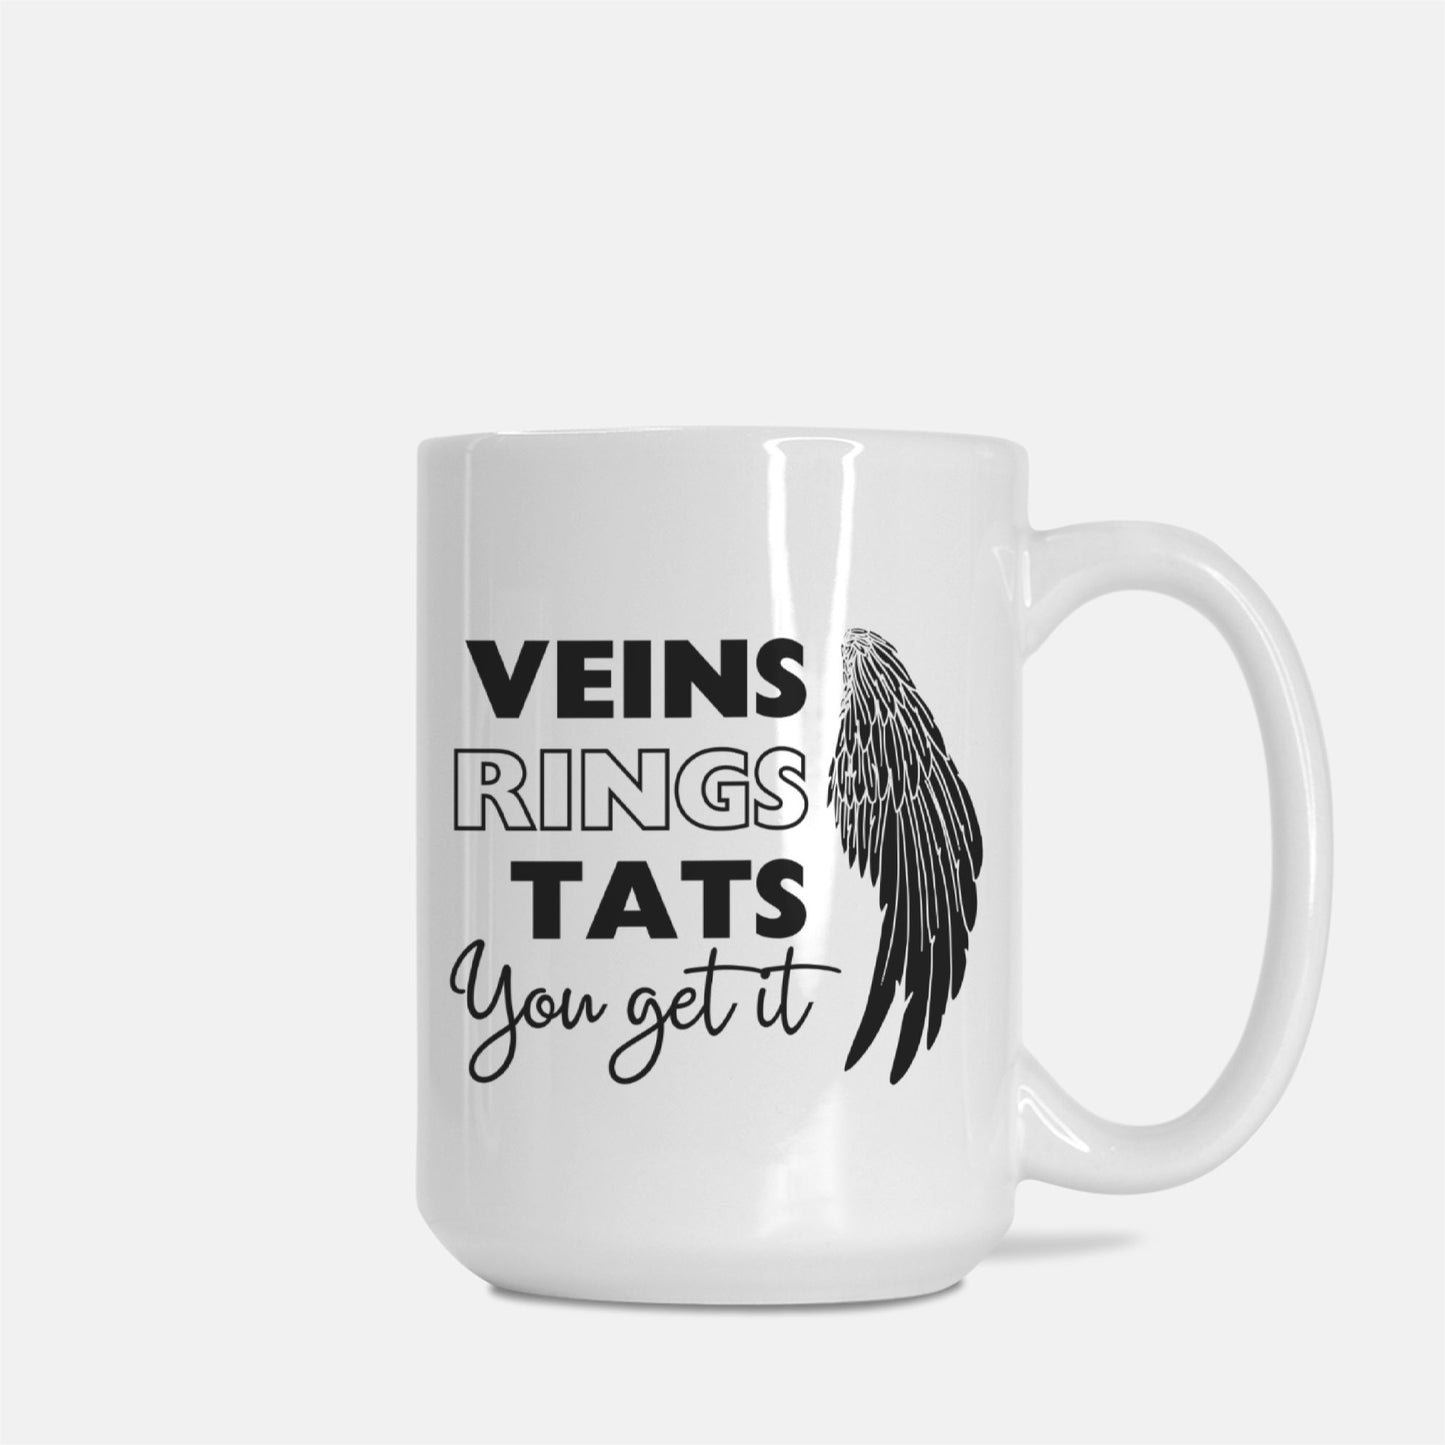 Veins, Rings, and Tats - Drinkware